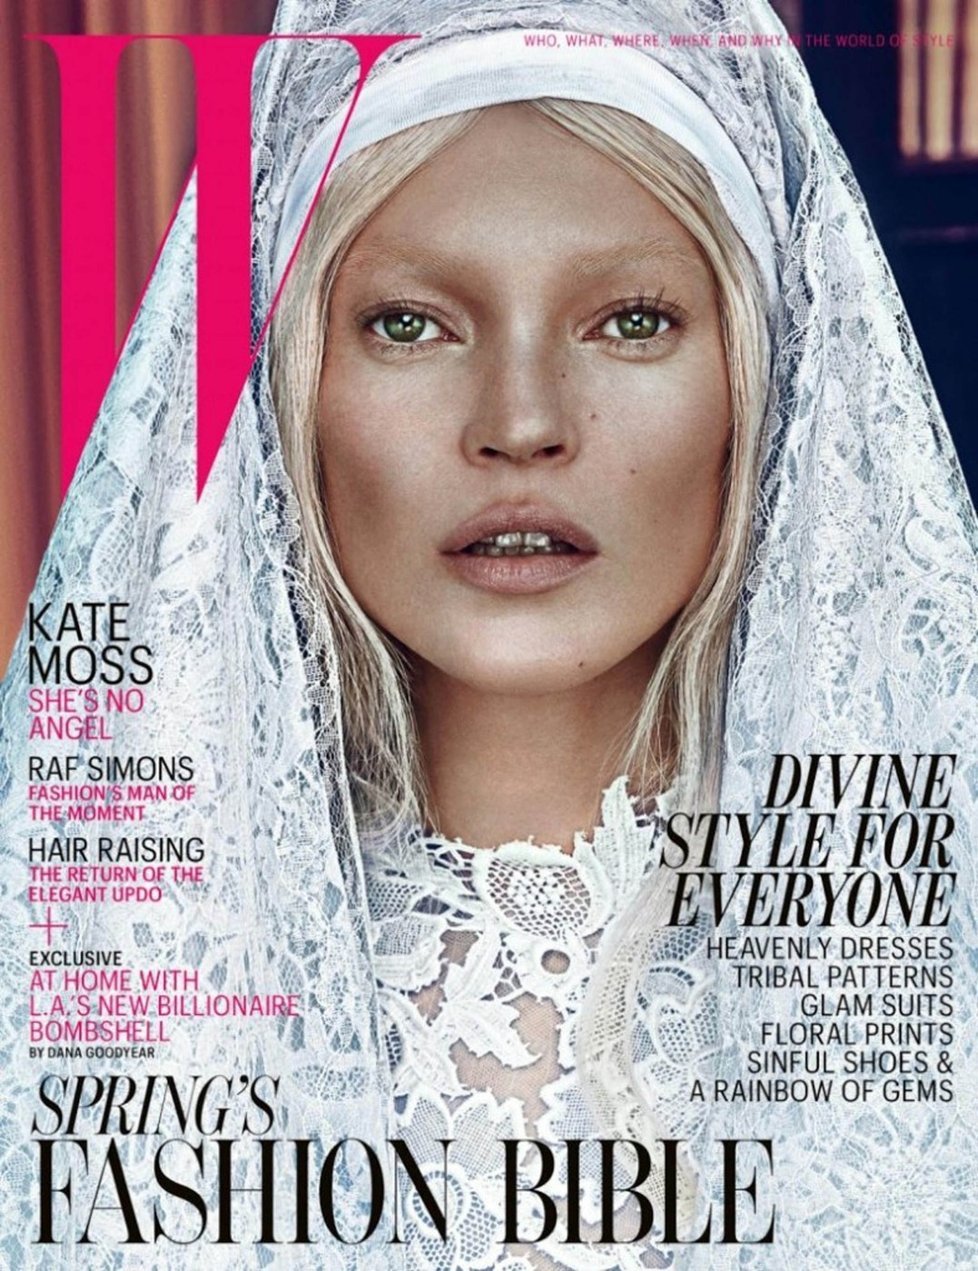 Titulní strana s andělskou tváří Kate Moss